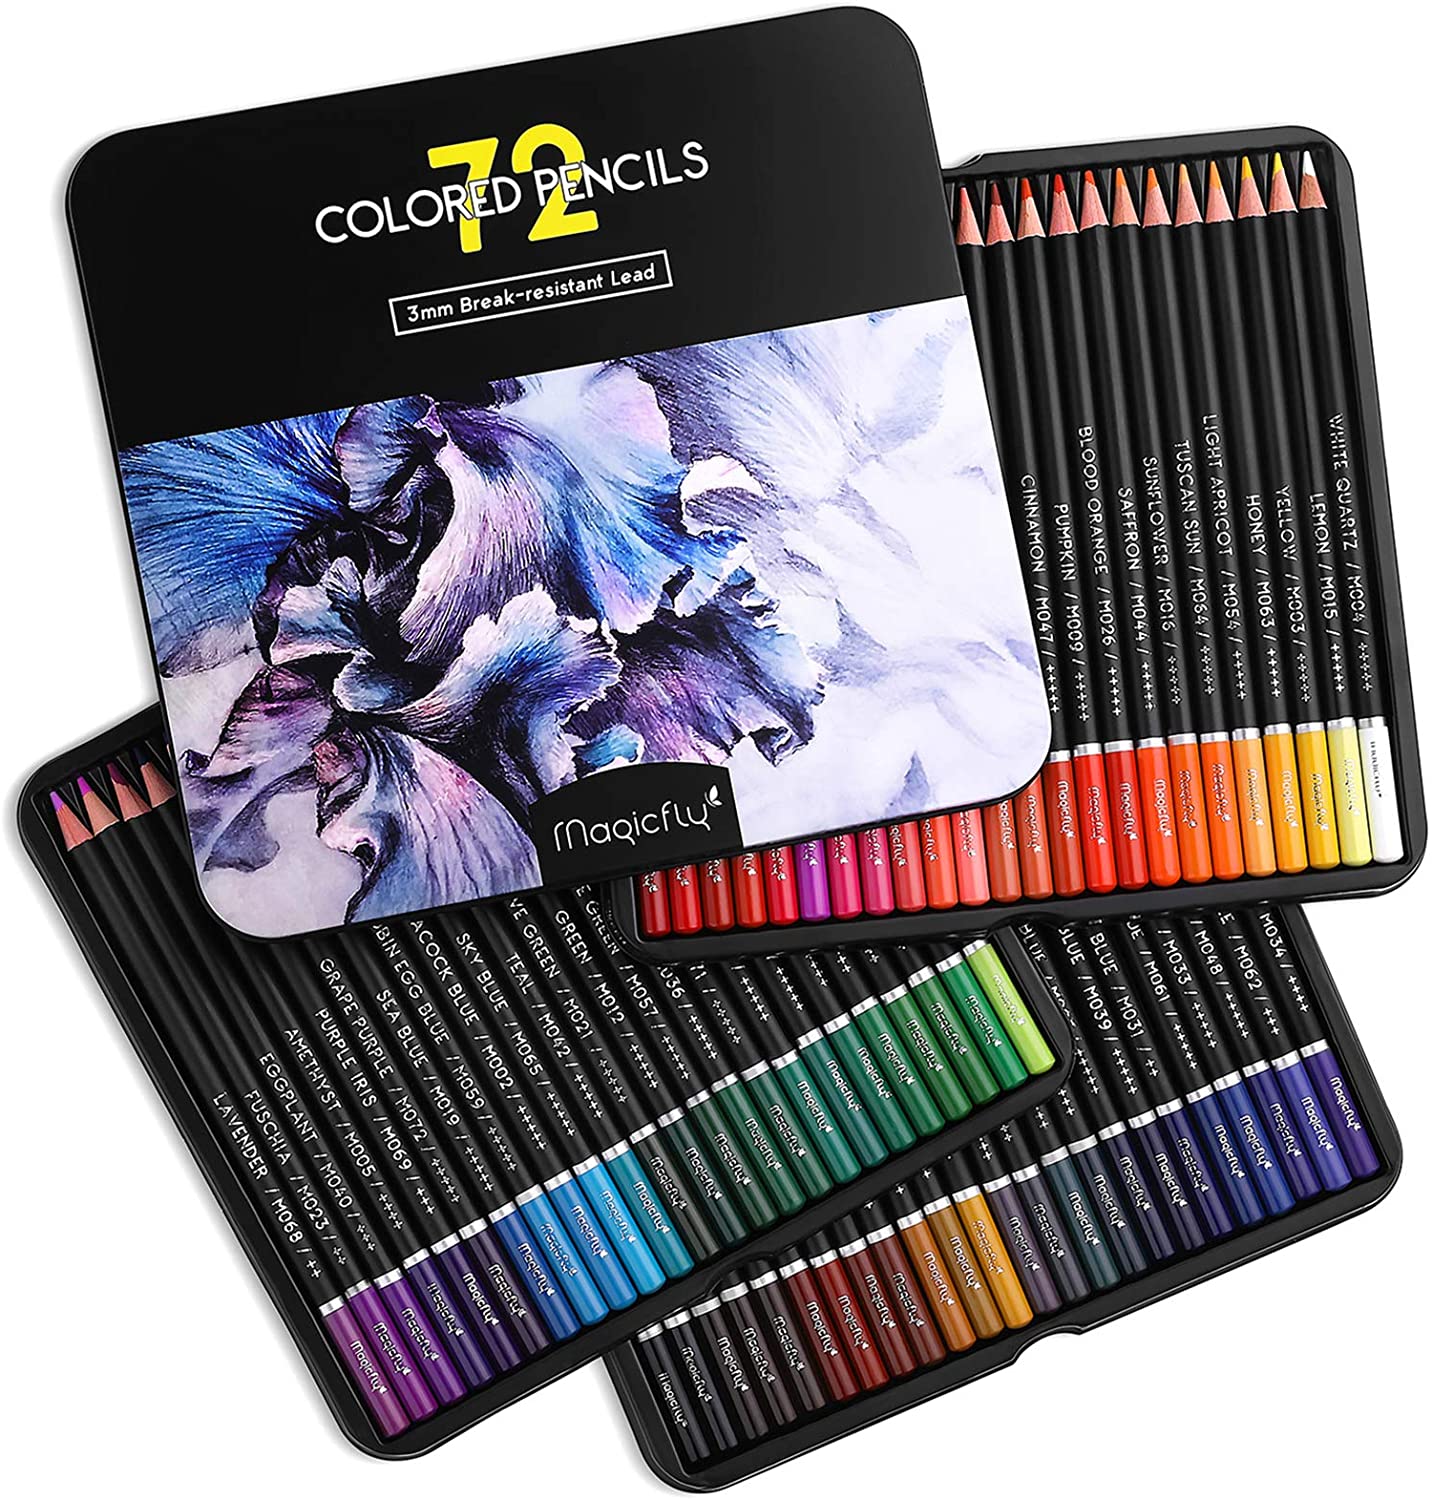 Dibujo de Lápices de colores para colorear